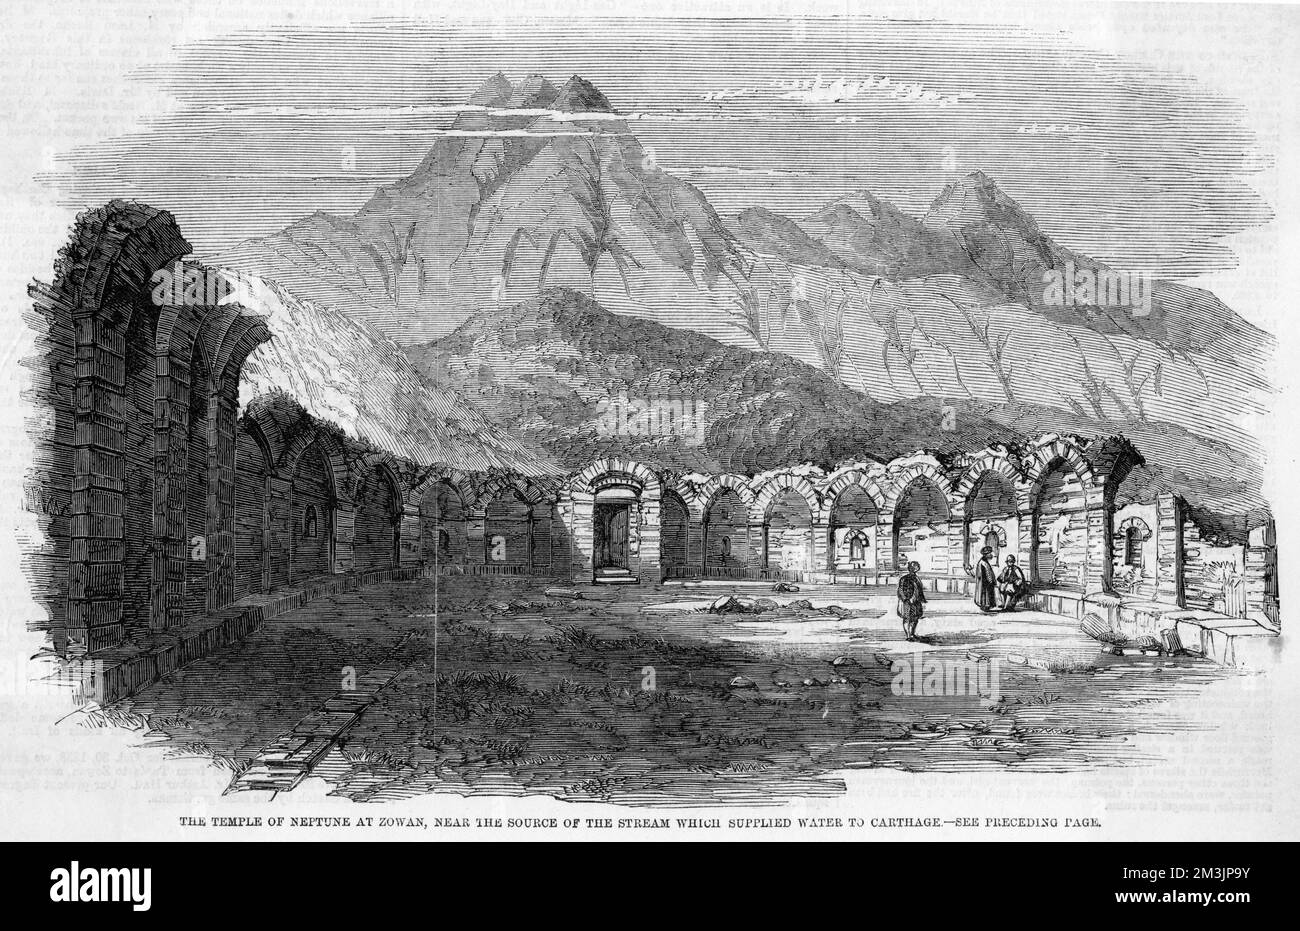 Tempio rovinato di Nettuno a Bowan, fonte del torrente che ha fornito acqua al popolo di Cartagine, attraverso un acquedotto, fino alla loro sconfitta da parte dei Romani nel 146 a.C. Data: 1859 Foto Stock